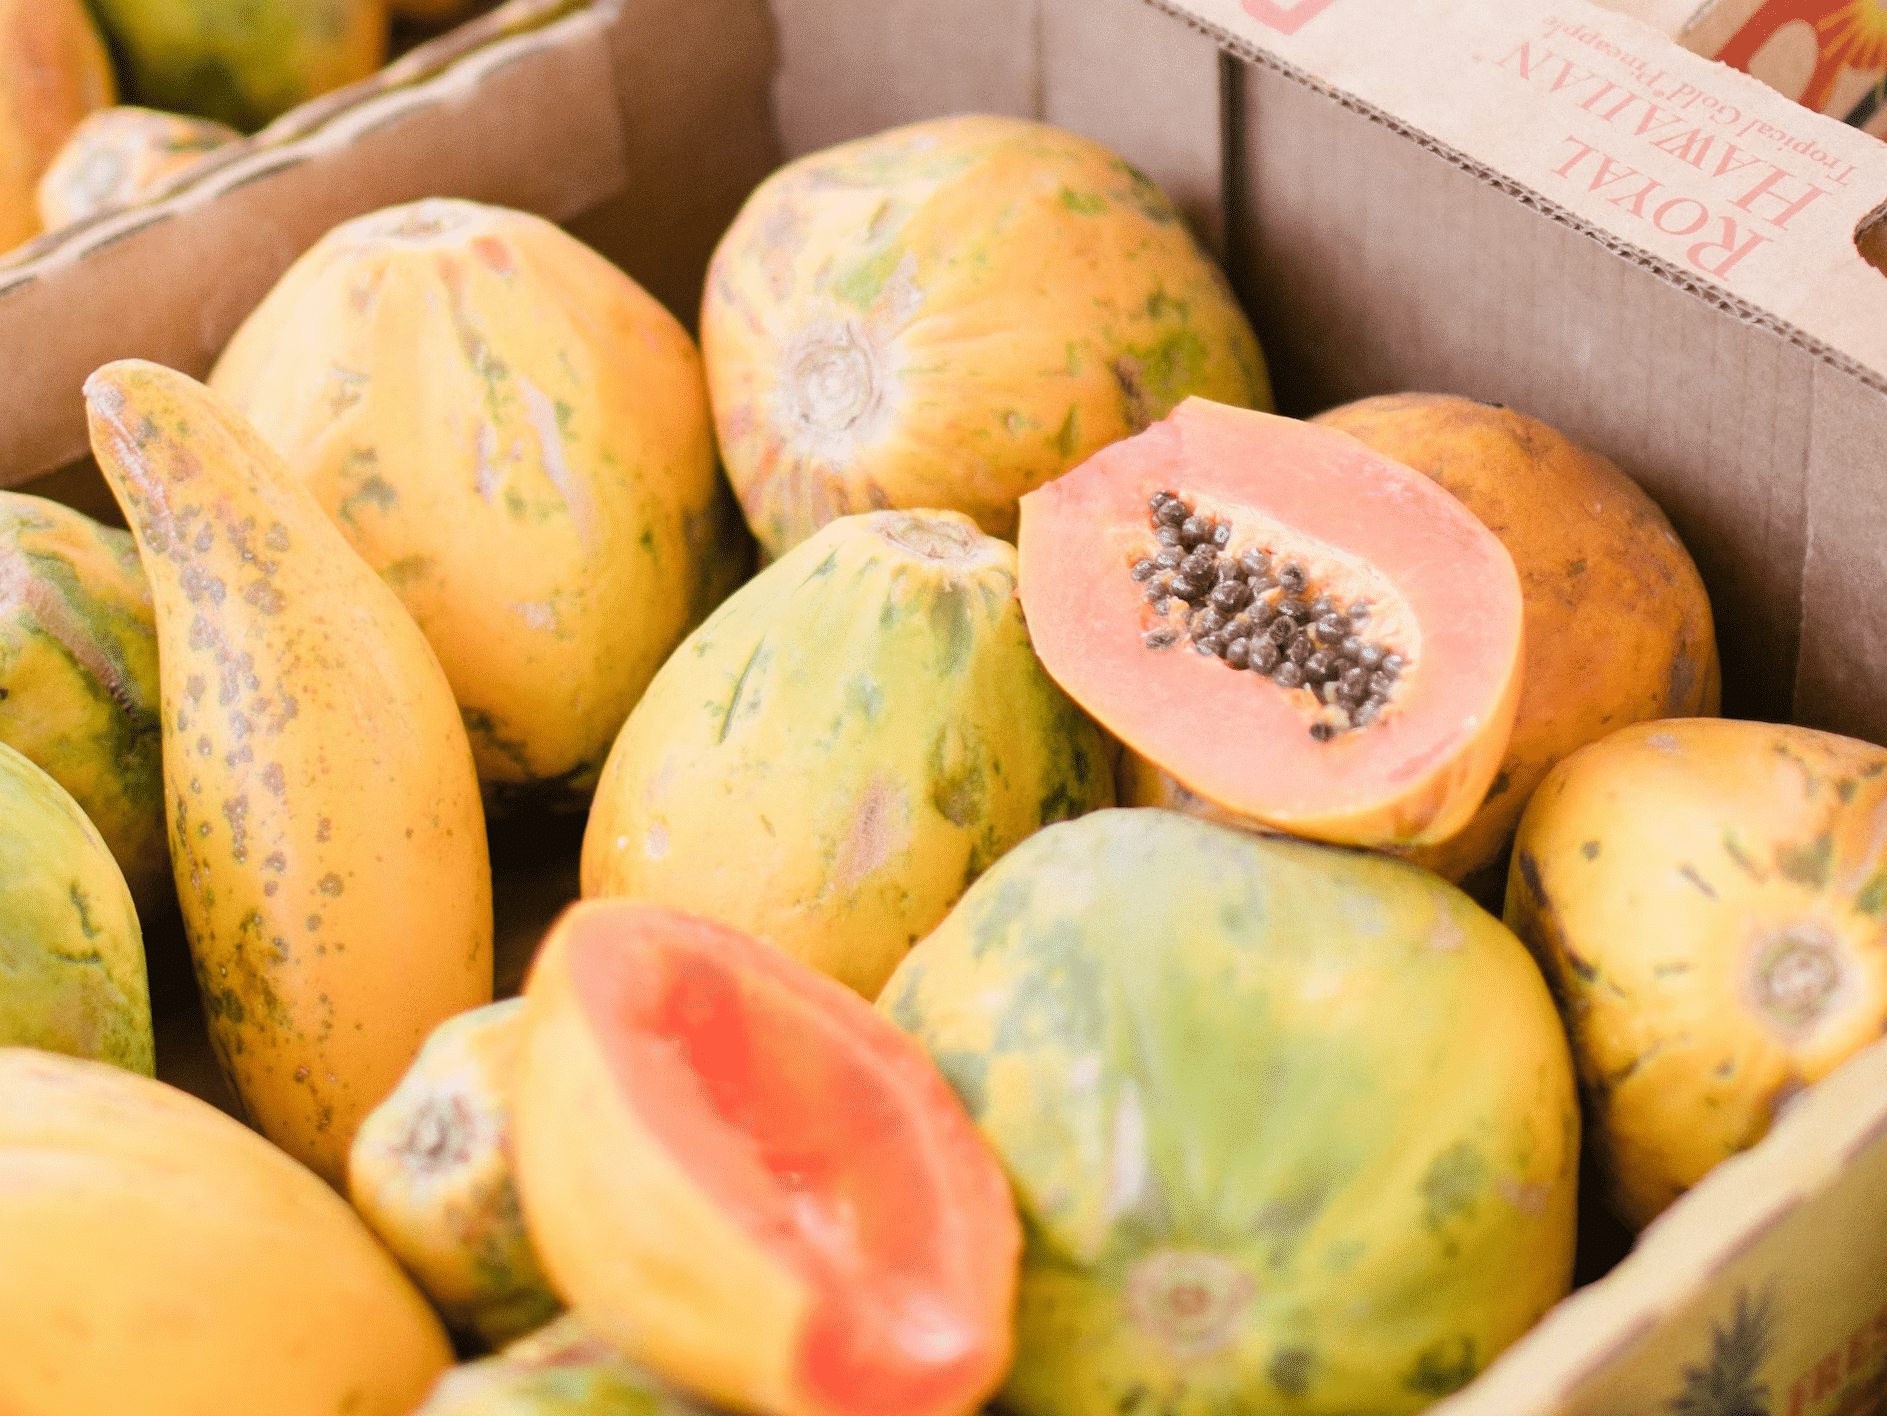 Papayas: A Tropical Digestive Aid - Fruits in Haiti